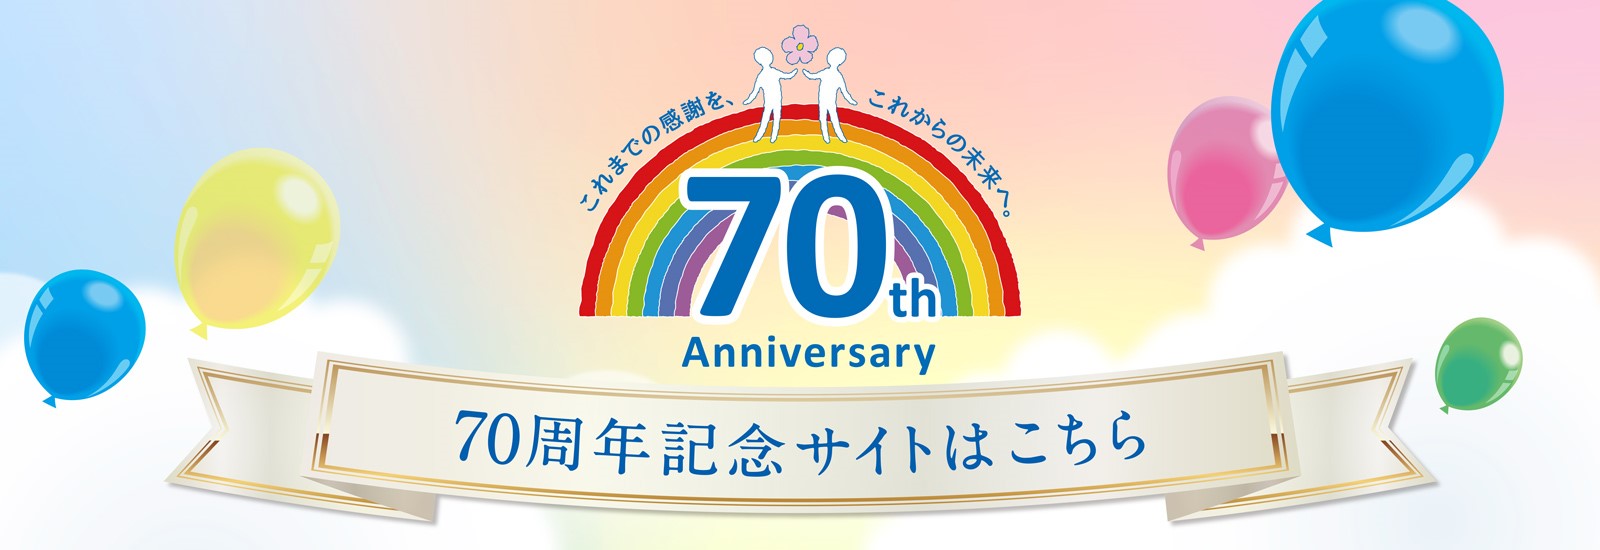 70周年記念サイト